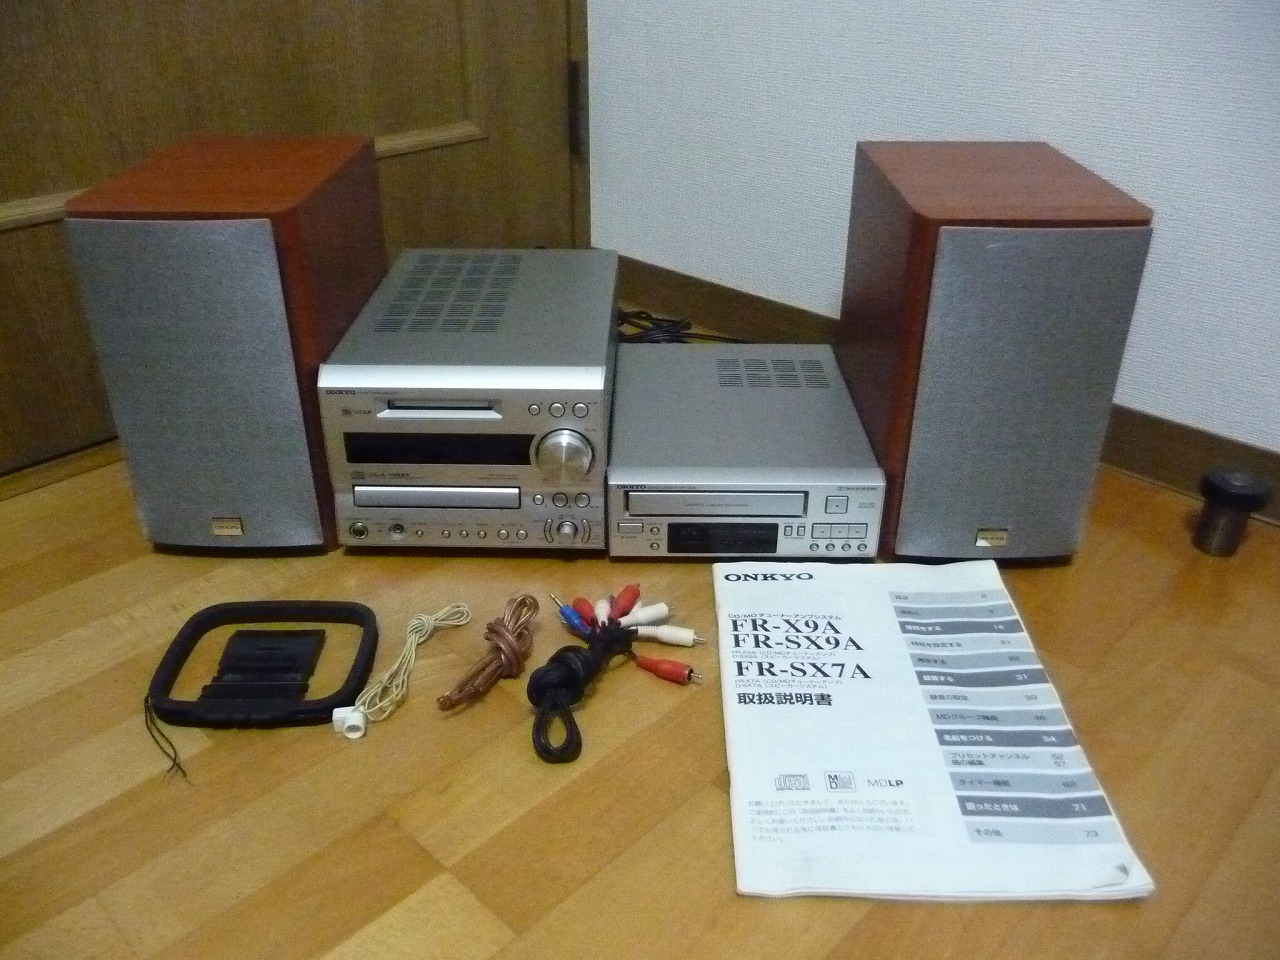 コンポ ONKYO FR-X7A K-SX7 D-SX7A カセットデッキ MDデッキ ラジオチューナー アンプ スピーカー ペア オンキョー